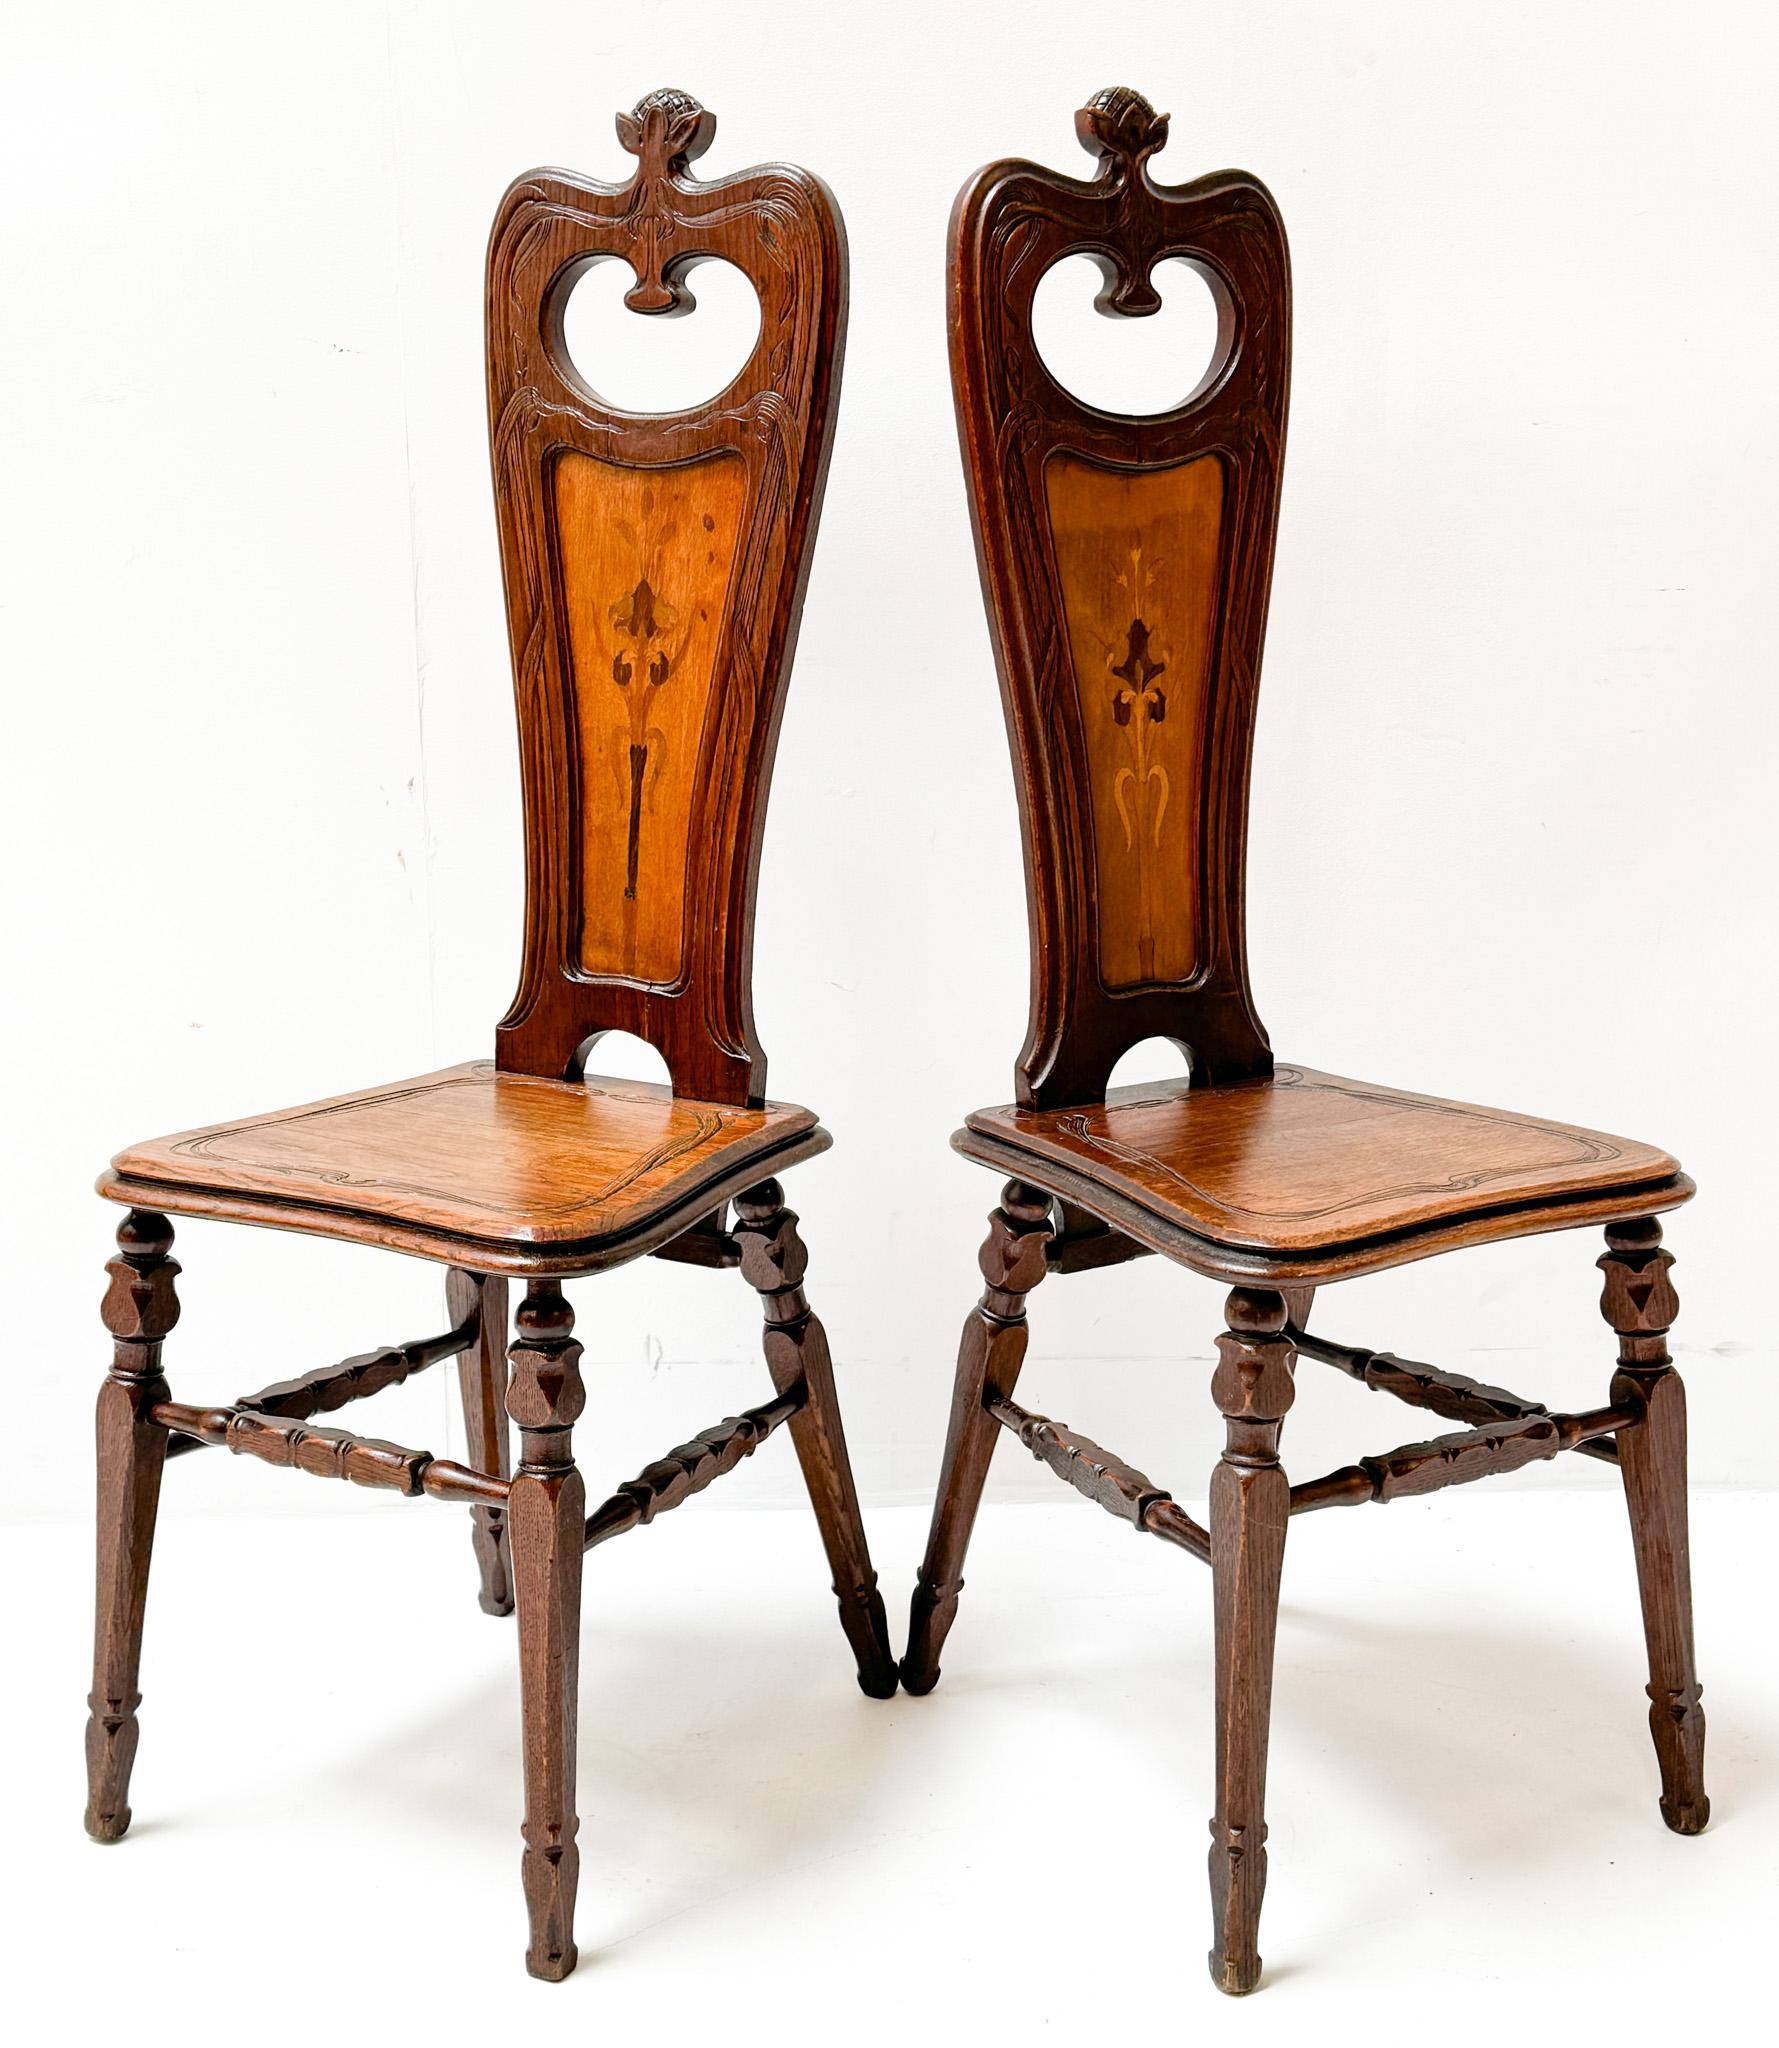 Wunderschönes und seltenes Paar Jugendstil-Beistellstühle.
Entwurf von Emile Gallé.
Auffälliges französisches Design aus den 1890er Jahren.
Massive Eichenrahmen mit originalen Platanenverzierungen auf den Rückseiten.
Dieses wunderbare Paar